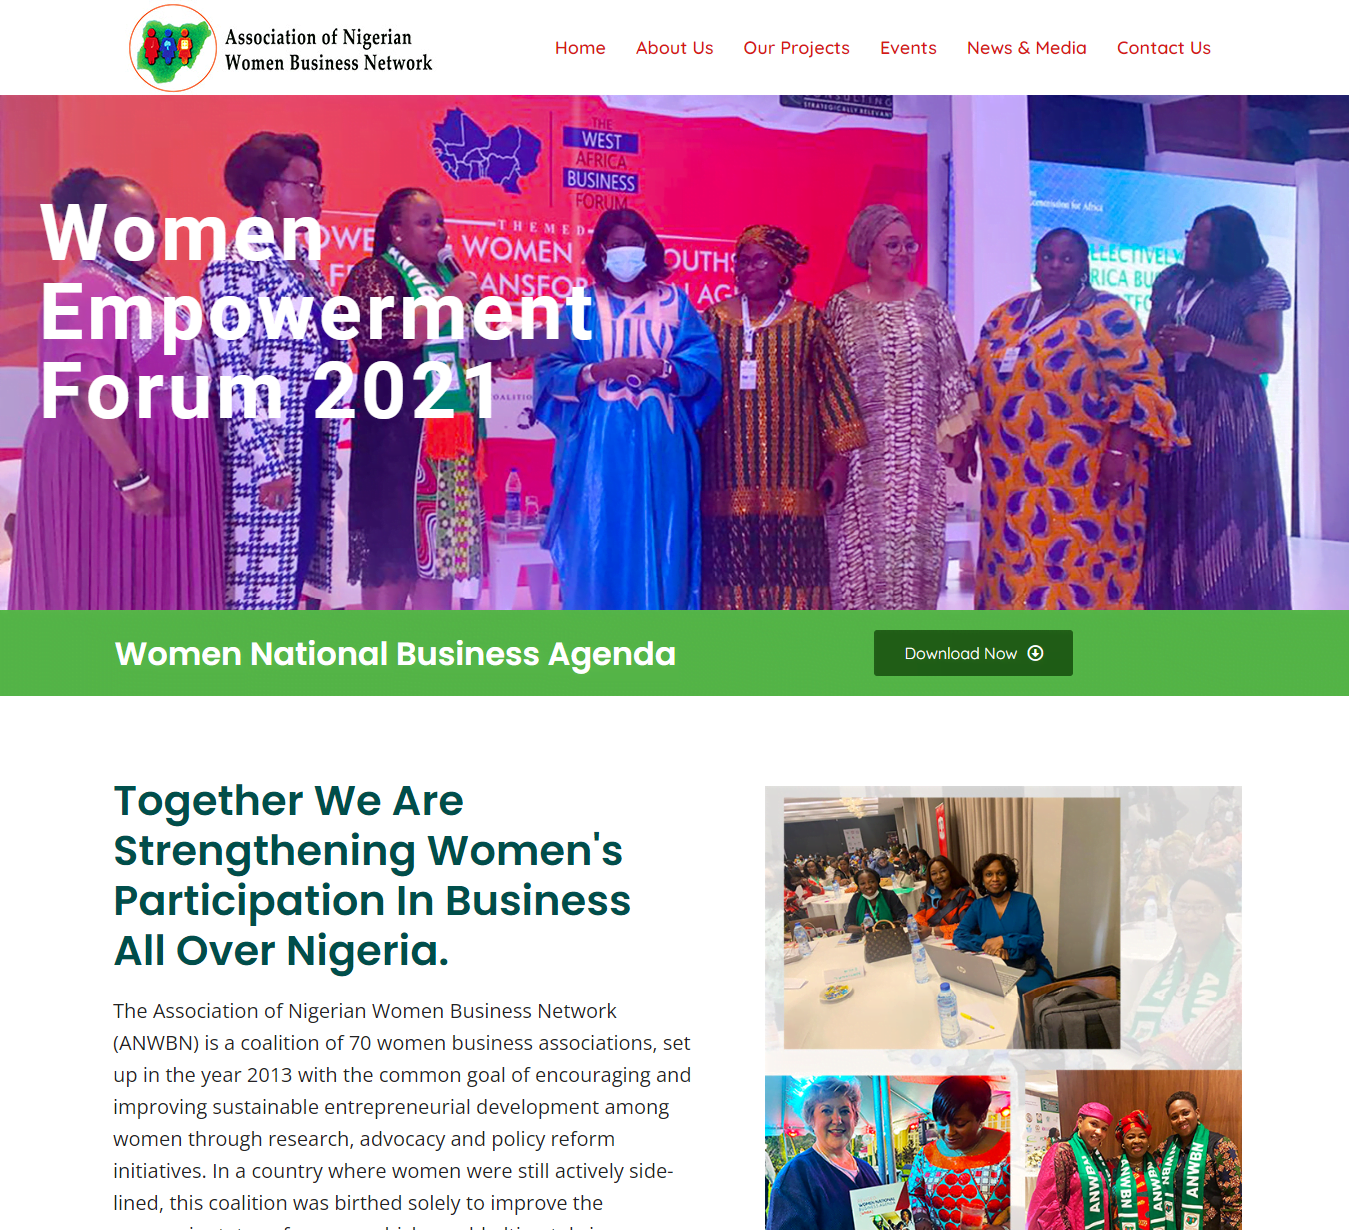 Association of Nigerian Women Business Network